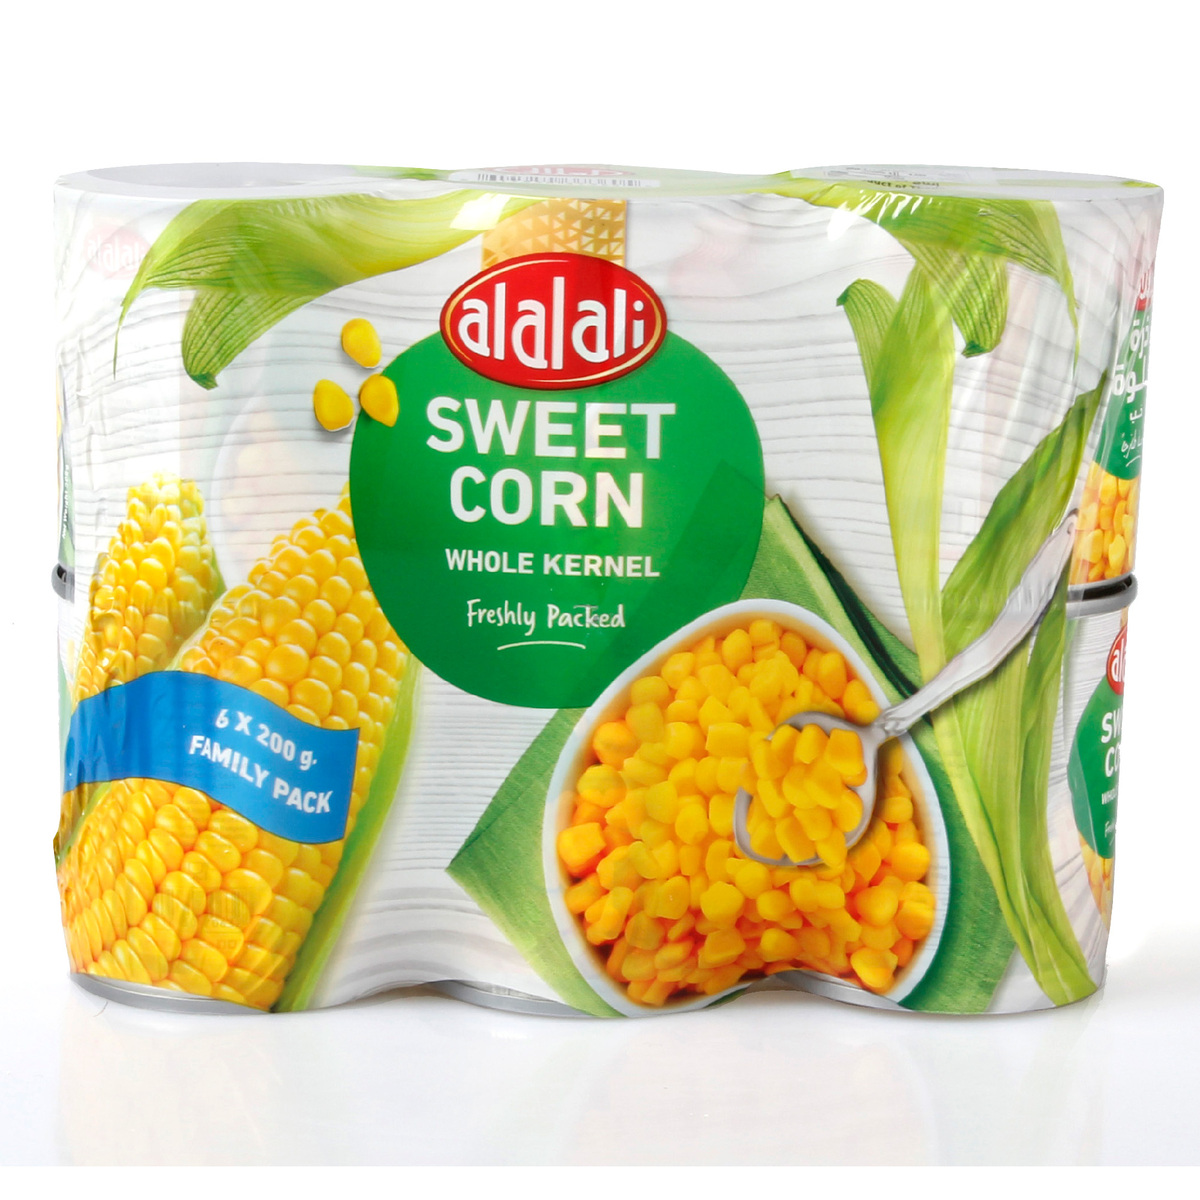 اشتري قم بشراء Al Alali Whole Kernel Sweet Corn Value Pack 6 x 200g Online at Best Price من الموقع - من لولو هايبر ماركت Cand Whl.Kernel Corn في الكويت